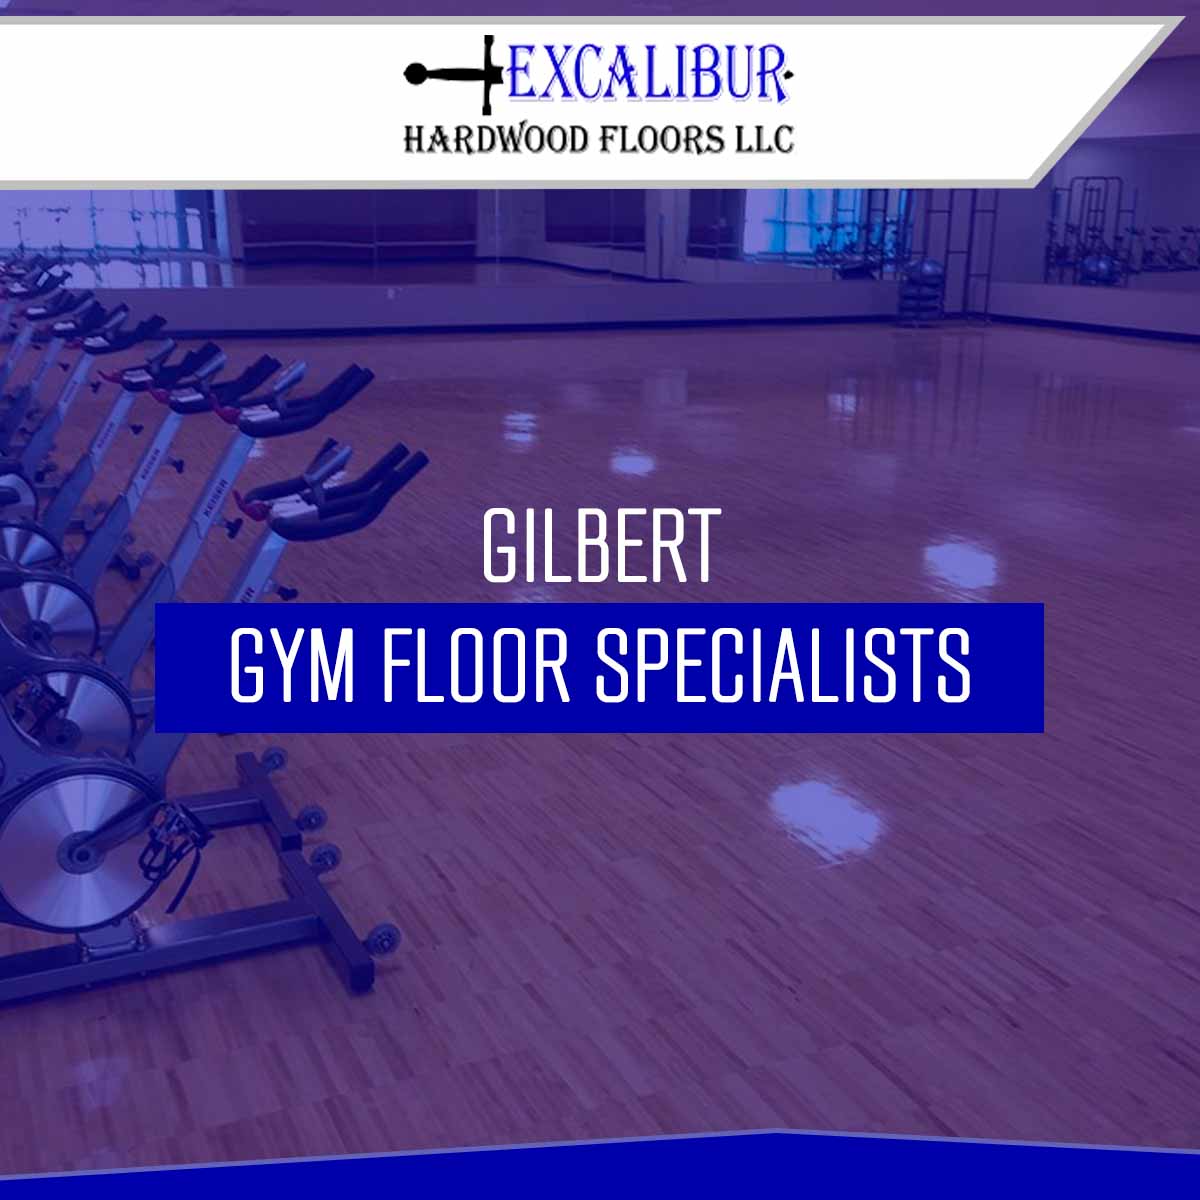 Gilbert Gym Floor Specialists At https://excaliburhardwoodfloors.com/